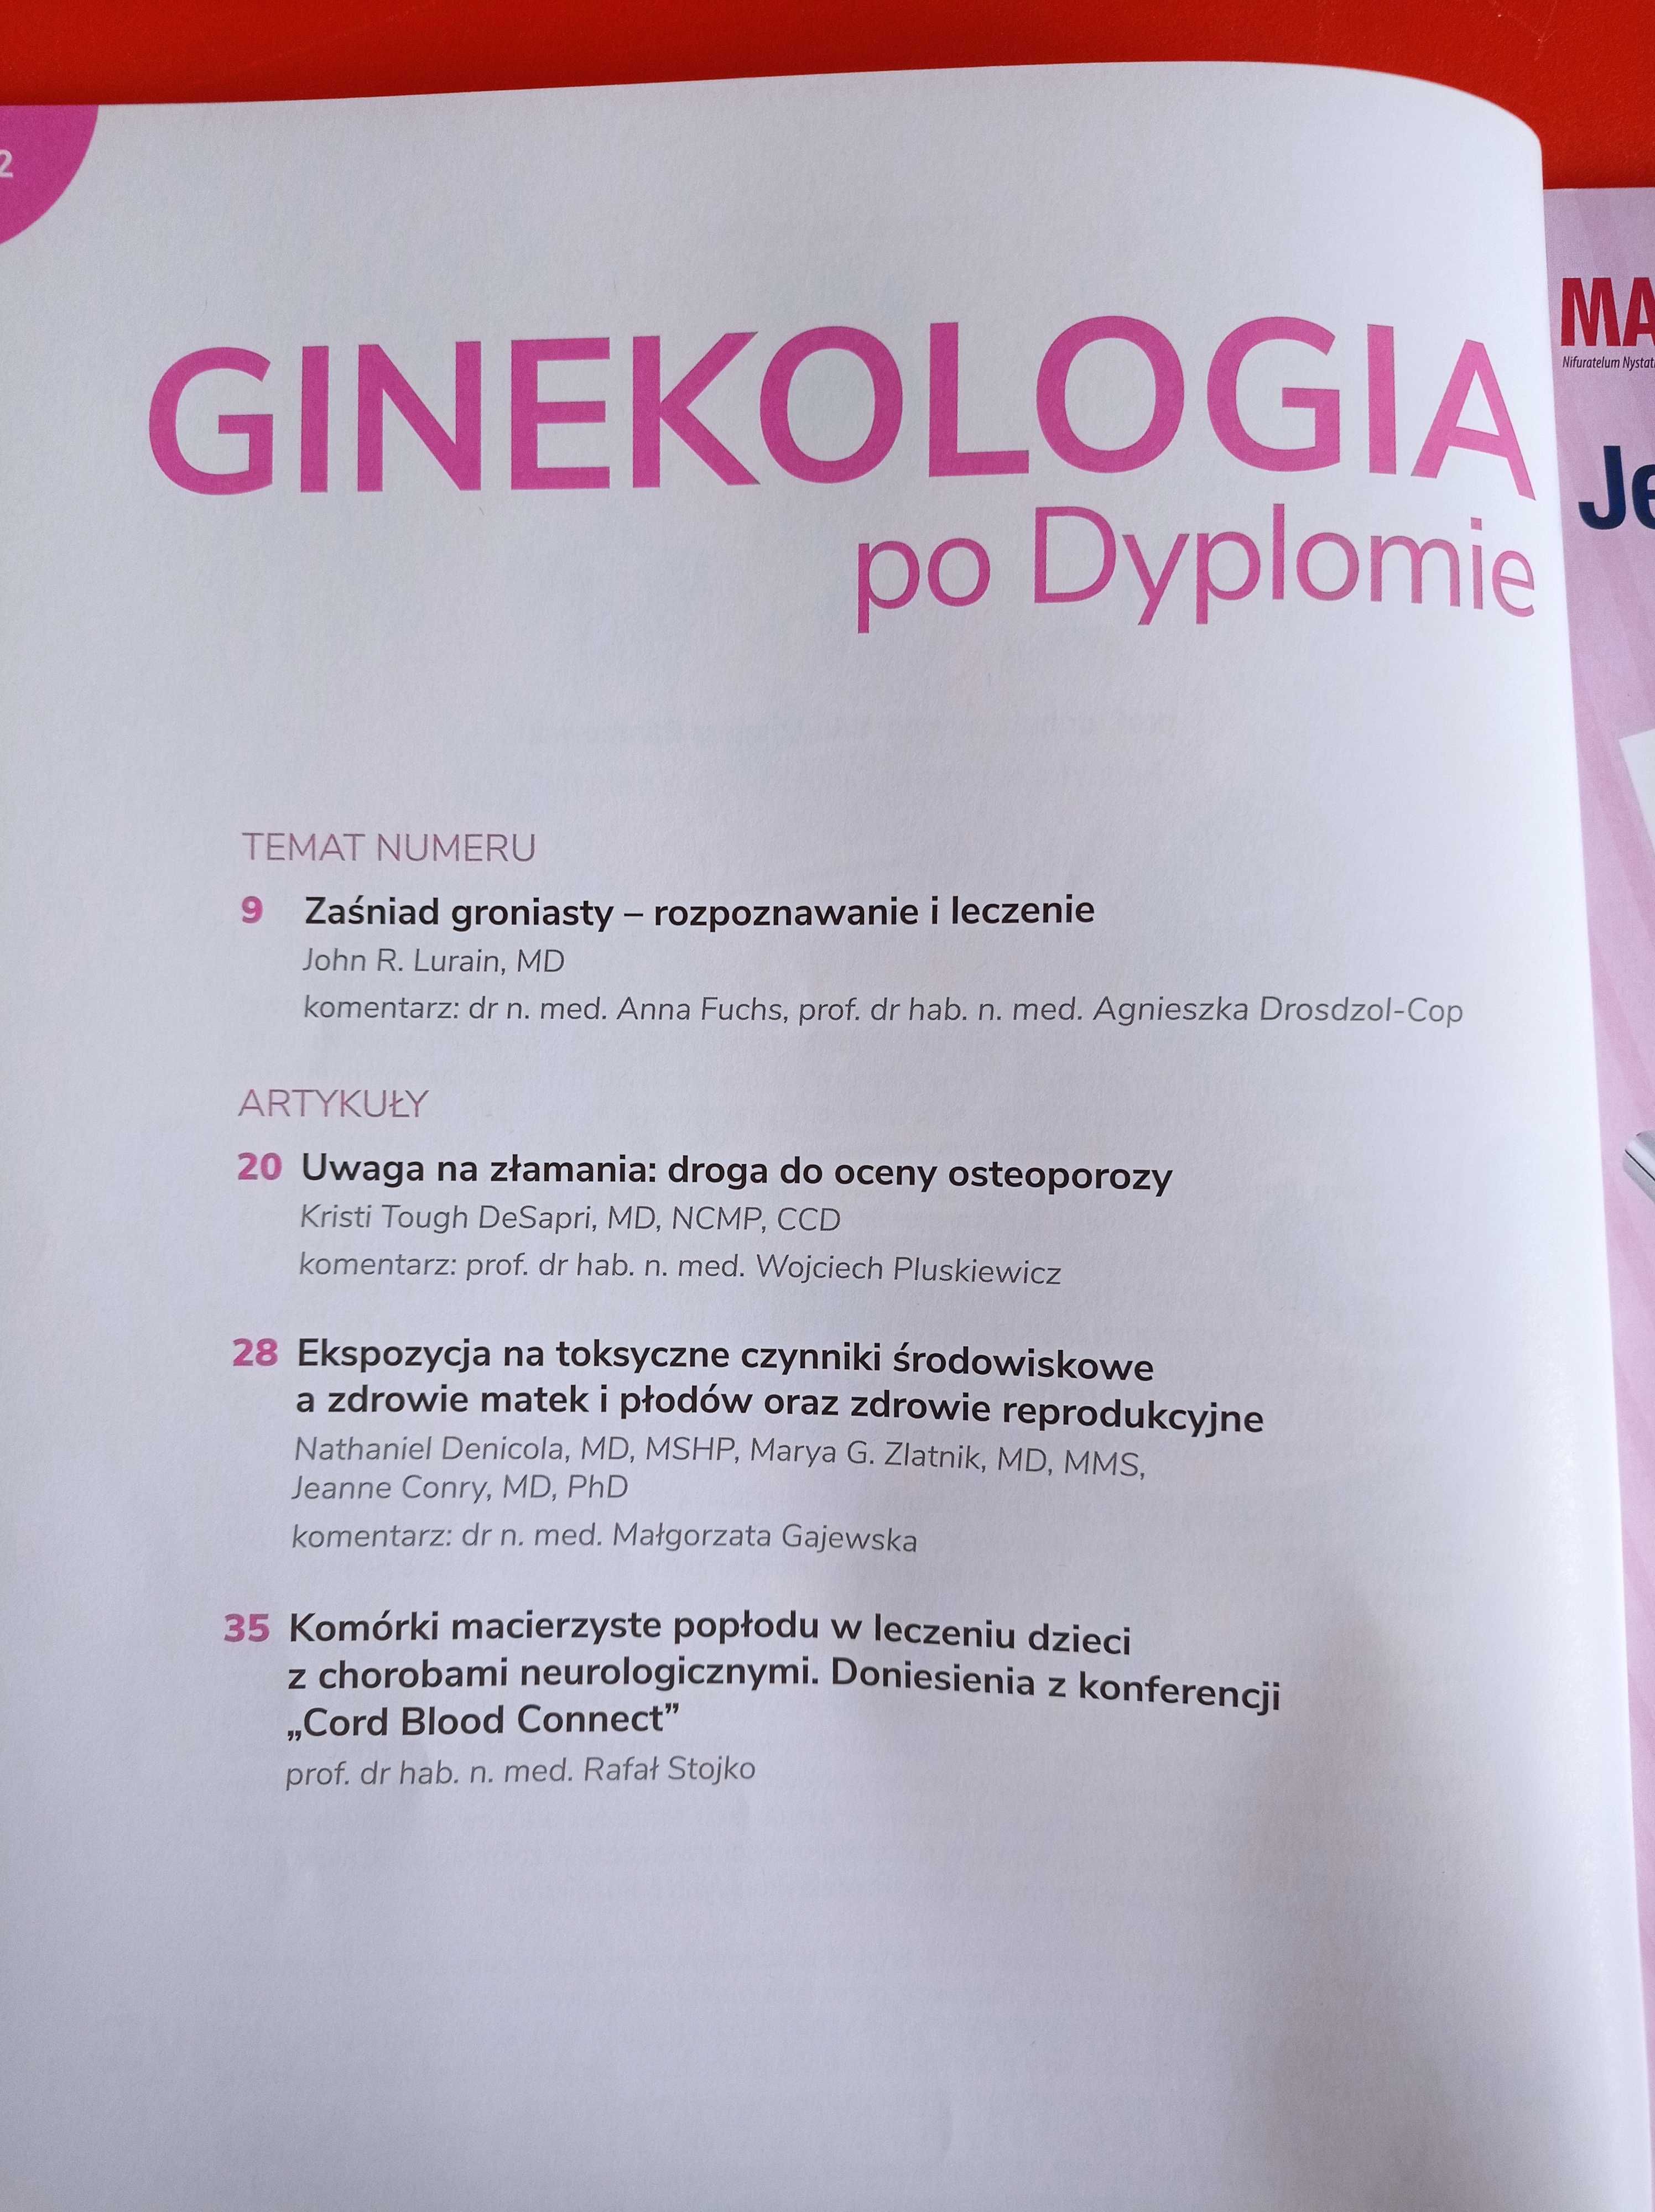 Ginekologia po dyplomie, nr 6, tom 21, listopad 2019